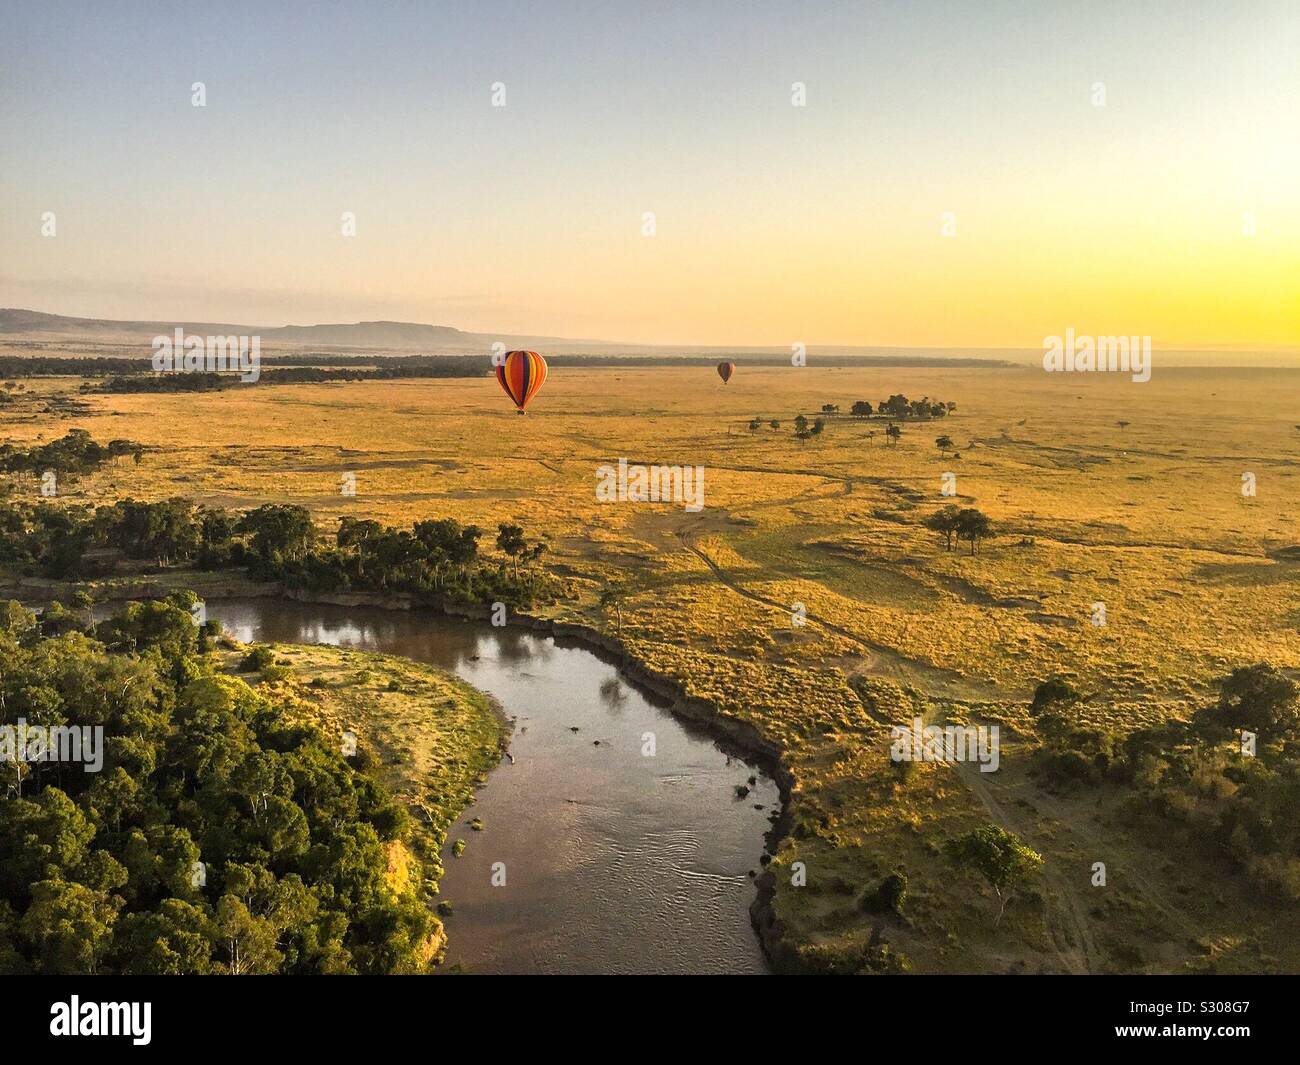 Ballon à air chaud. Vue imprenable sur le Massai Mara, Kenya Banque D'Images